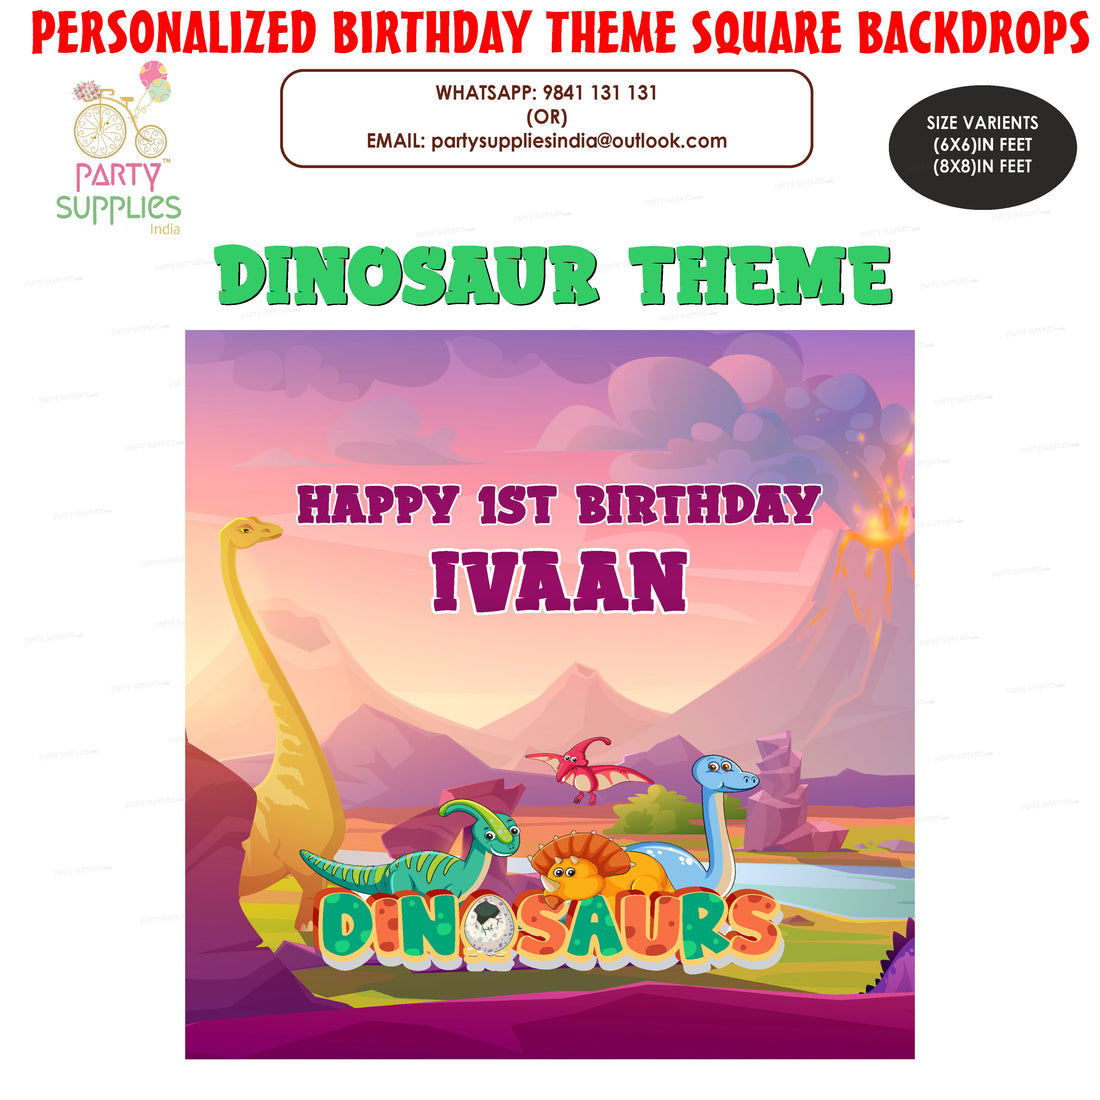 PSI Dinosaur Theme Classic Square Backdrop